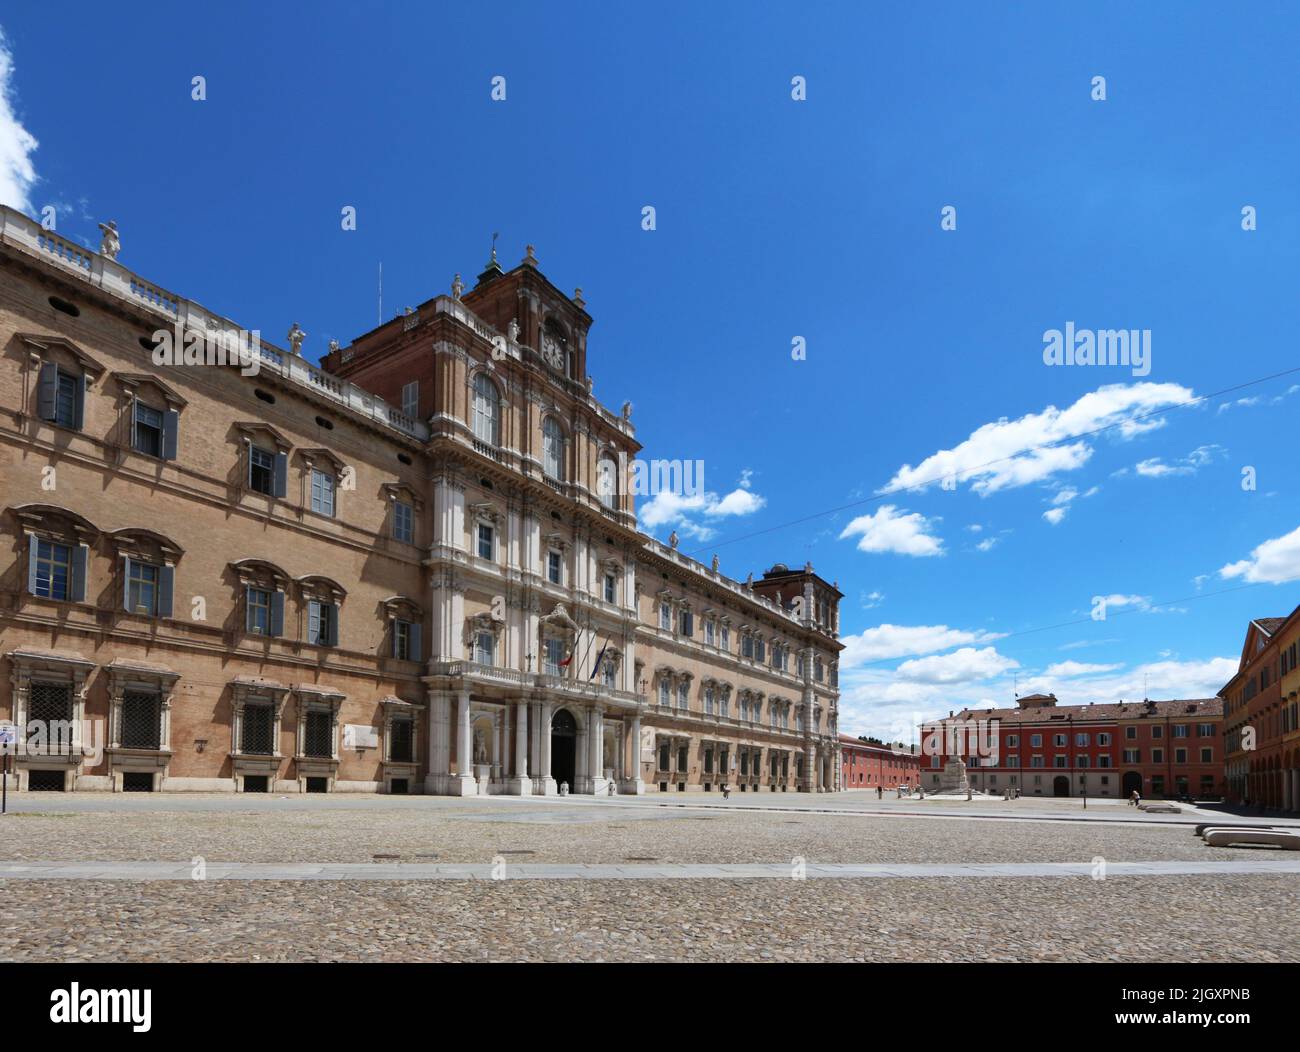 Módena, Emilia-Romagna, Italia, panorama de la Piazza Roma con en el fondo la fachada del antiguo palacio ducal, ahora la Academia Militar, turista Foto de stock